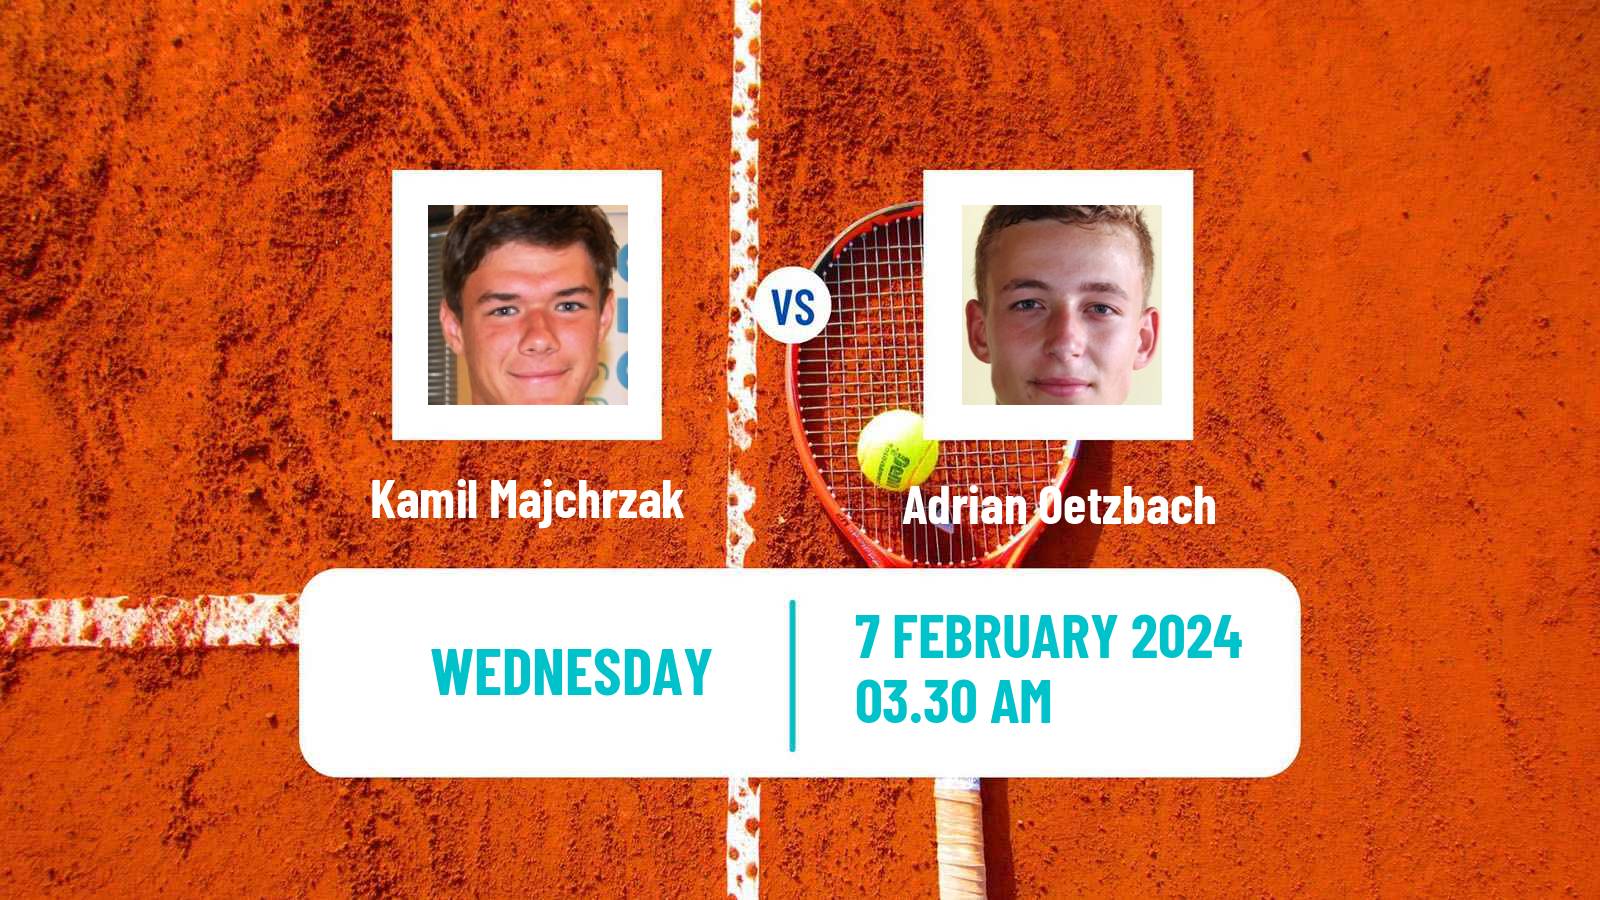 Tennis ITF M25 Hammamet 2 Men Kamil Majchrzak - Adrian Oetzbach